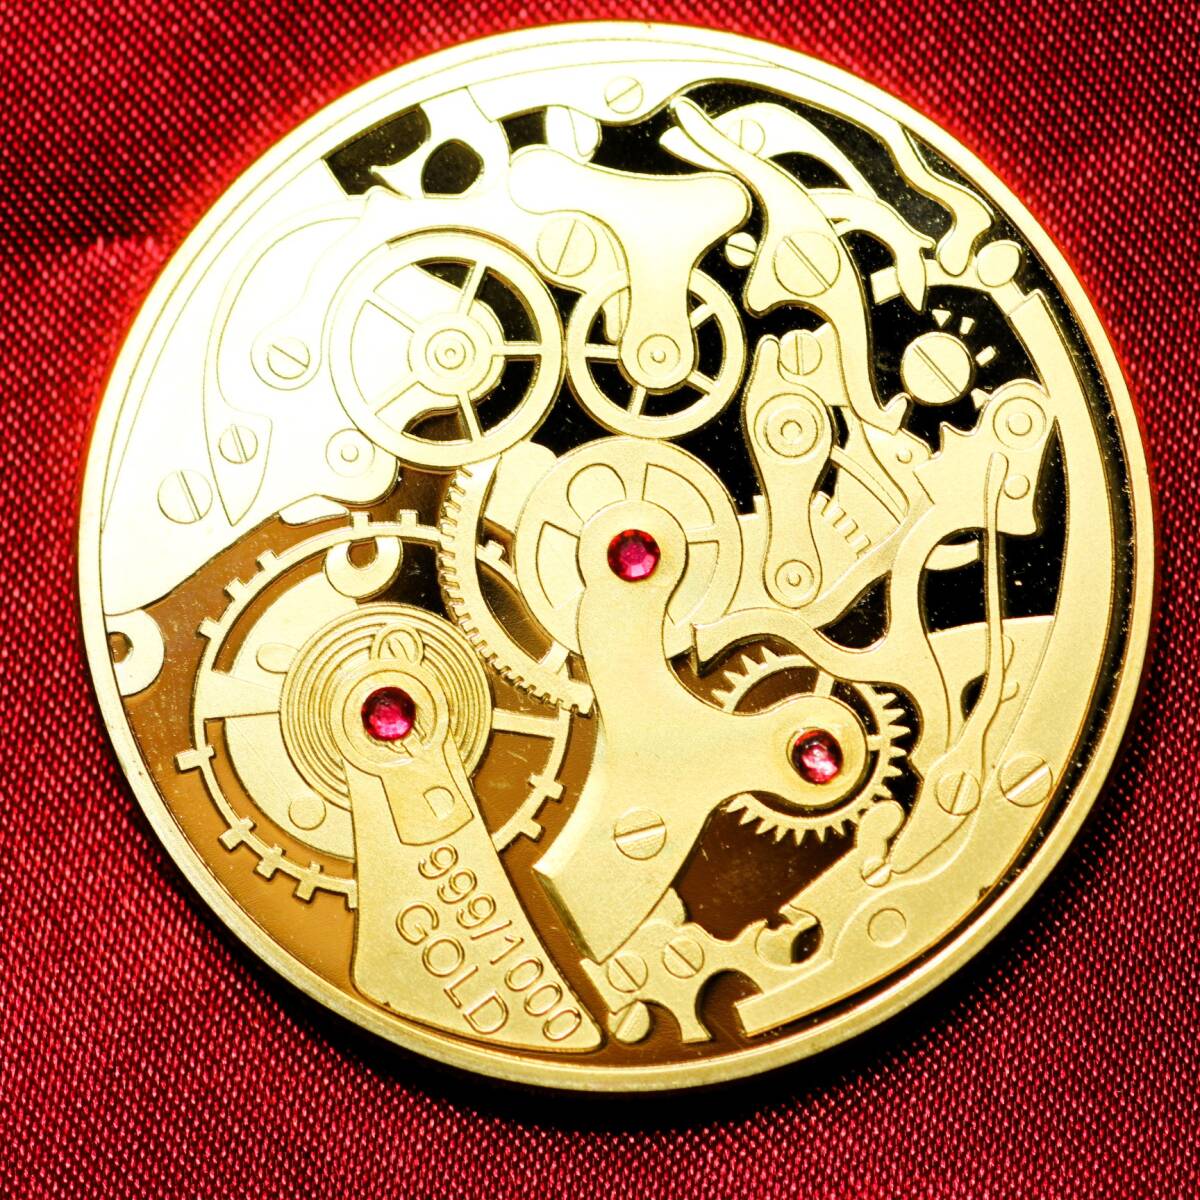 機械式時計 ムーブメント 石付き 金貨 記念メダル 美品 メダル 金 ゴールド 24KGP コイン レプリカ_画像1